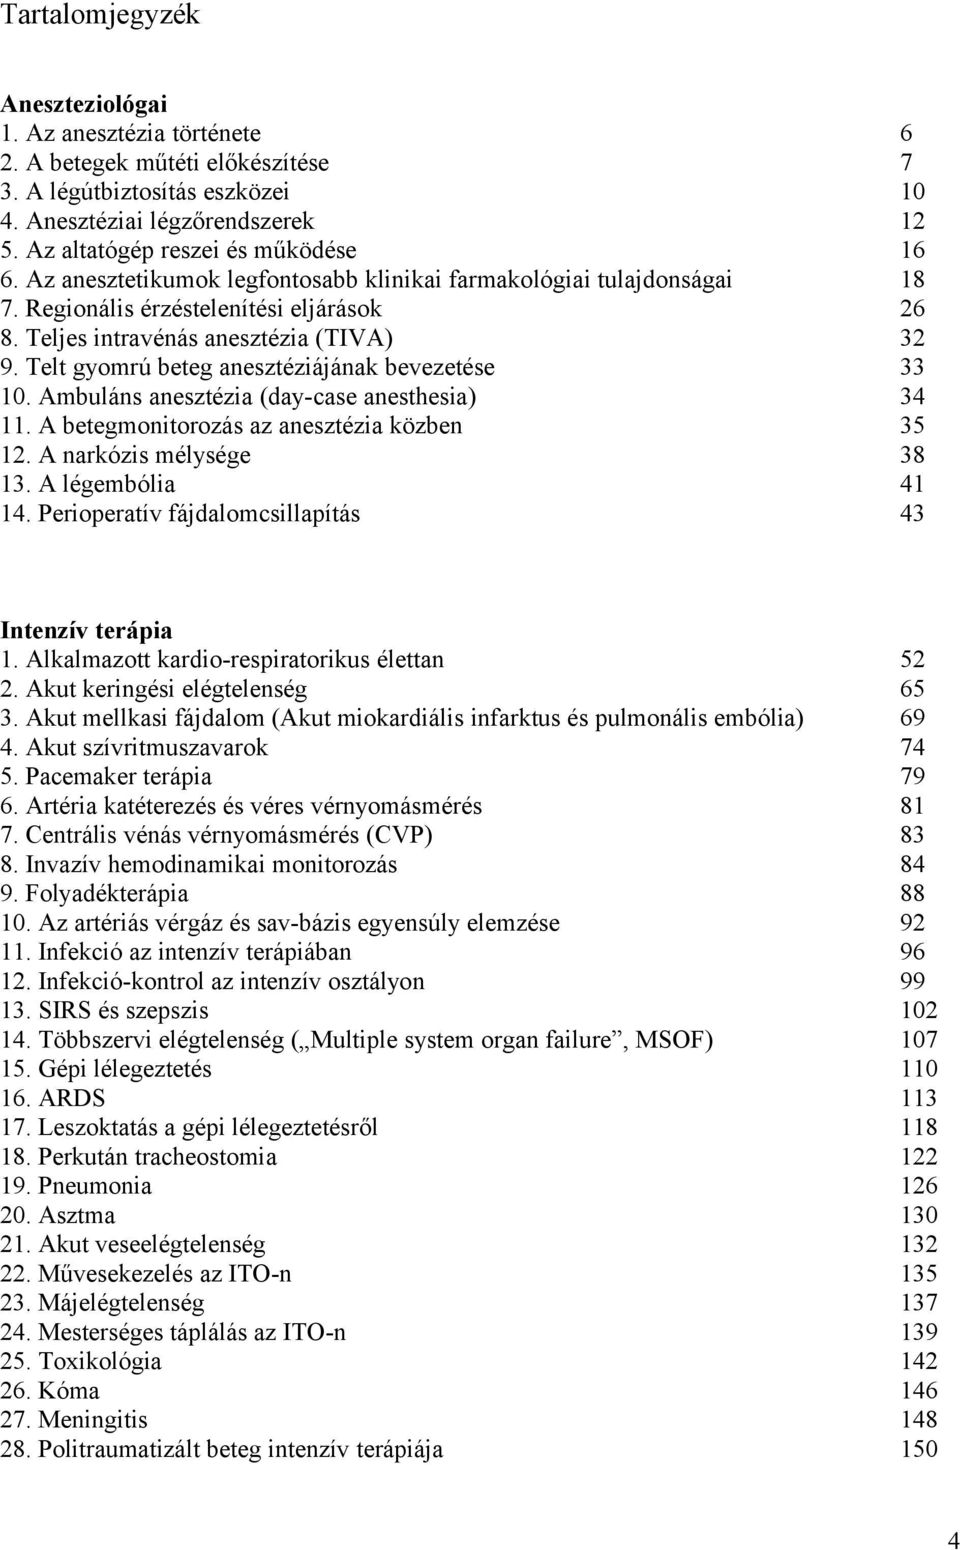 Aneszteziológia és Intenzív Terápia - PDF Ingyenes letöltés